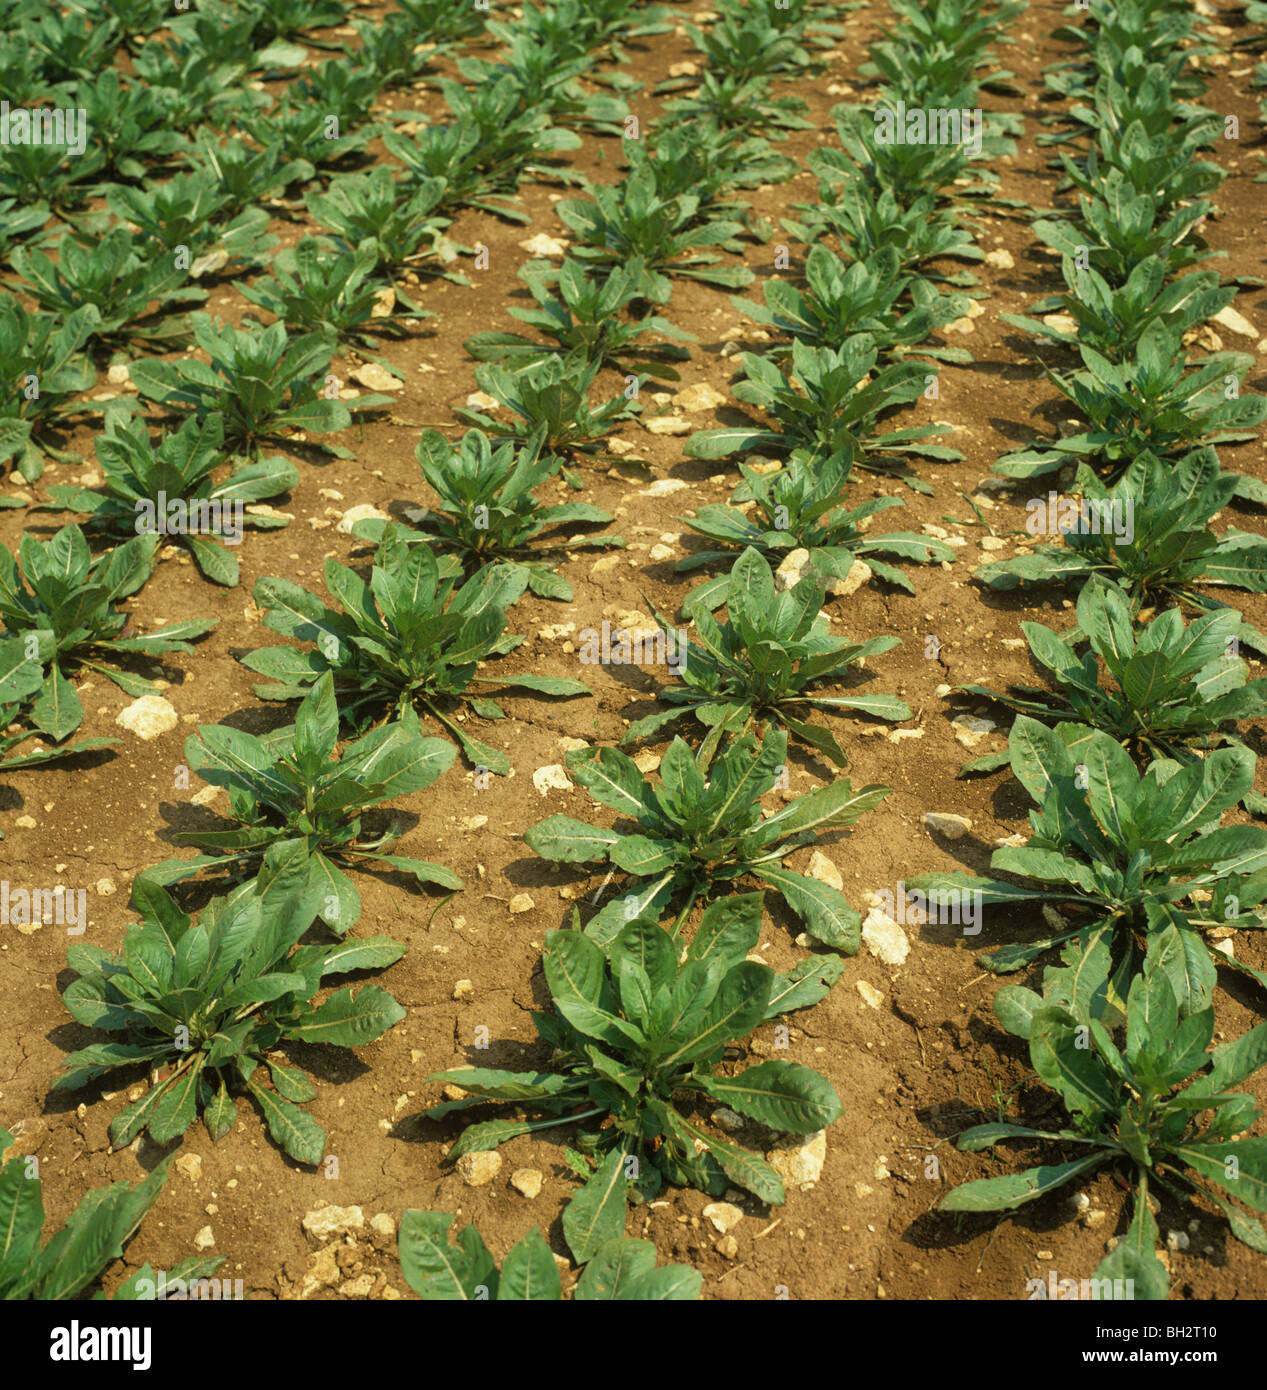 Junge Pflanze der Nachtkerze (Oenothera SP.) Pflanzen Gesundheit Nahrungsquelle Pflanzenöl Stockfoto